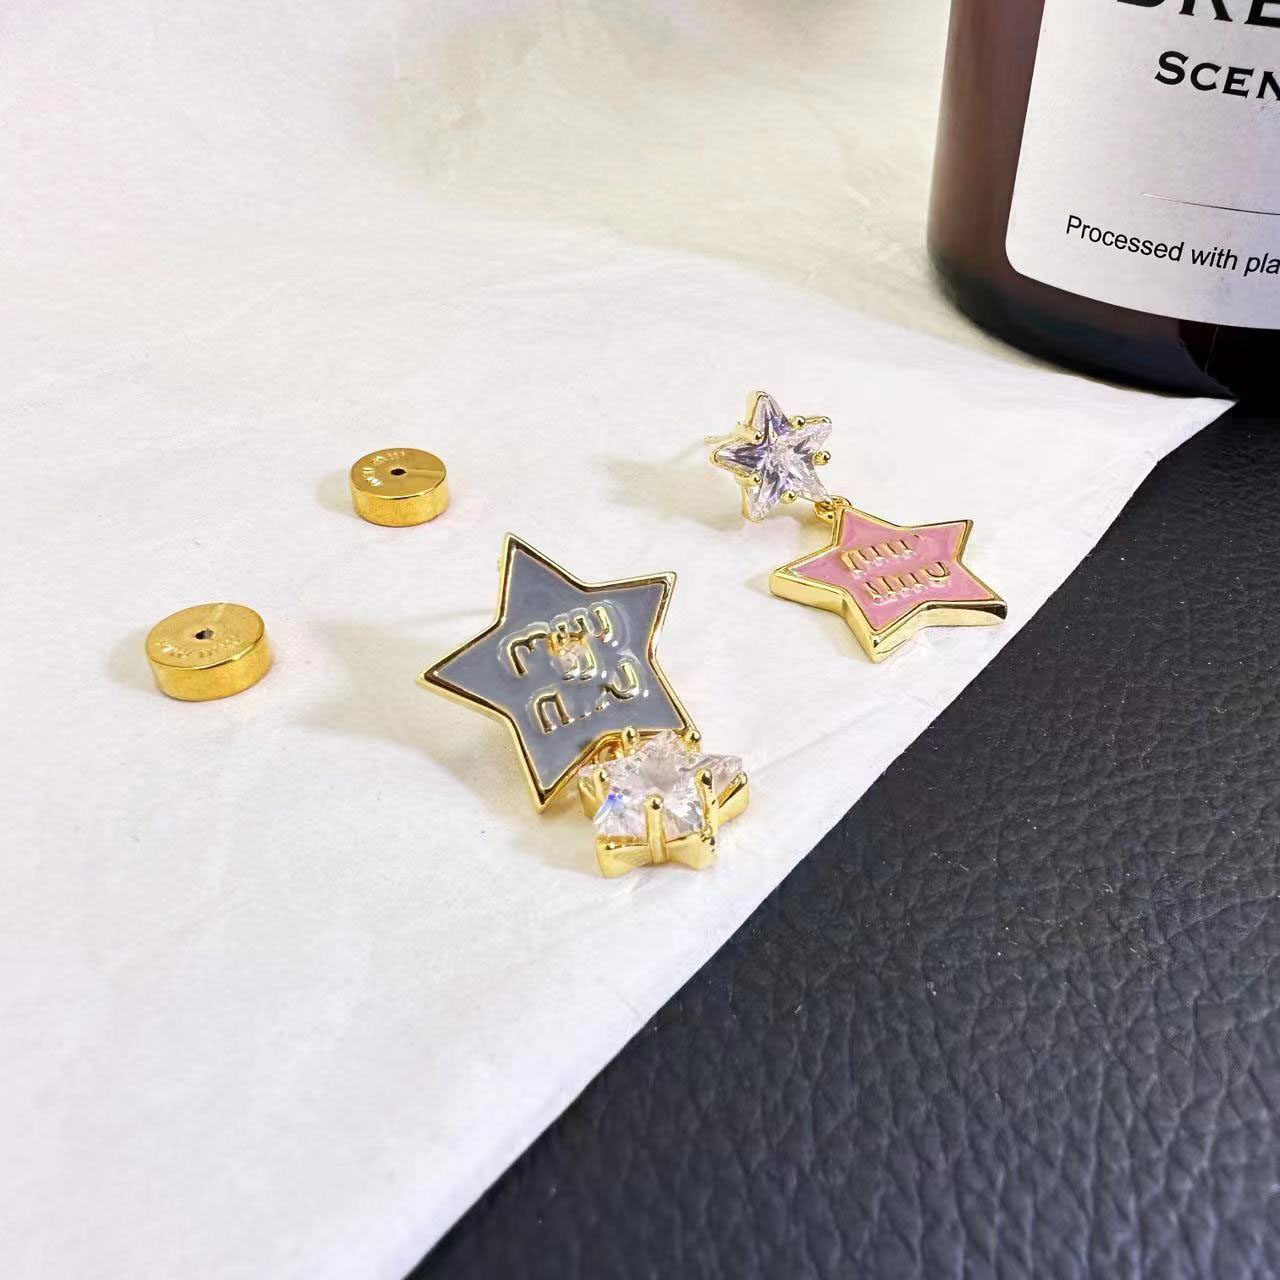 Nowe kolczyki projektanta Pięć spiczastej gwiazdy małej gwiazdy z diamentami kolczyki literowe słodki i fajny styl Unikalne i modne kolczyki